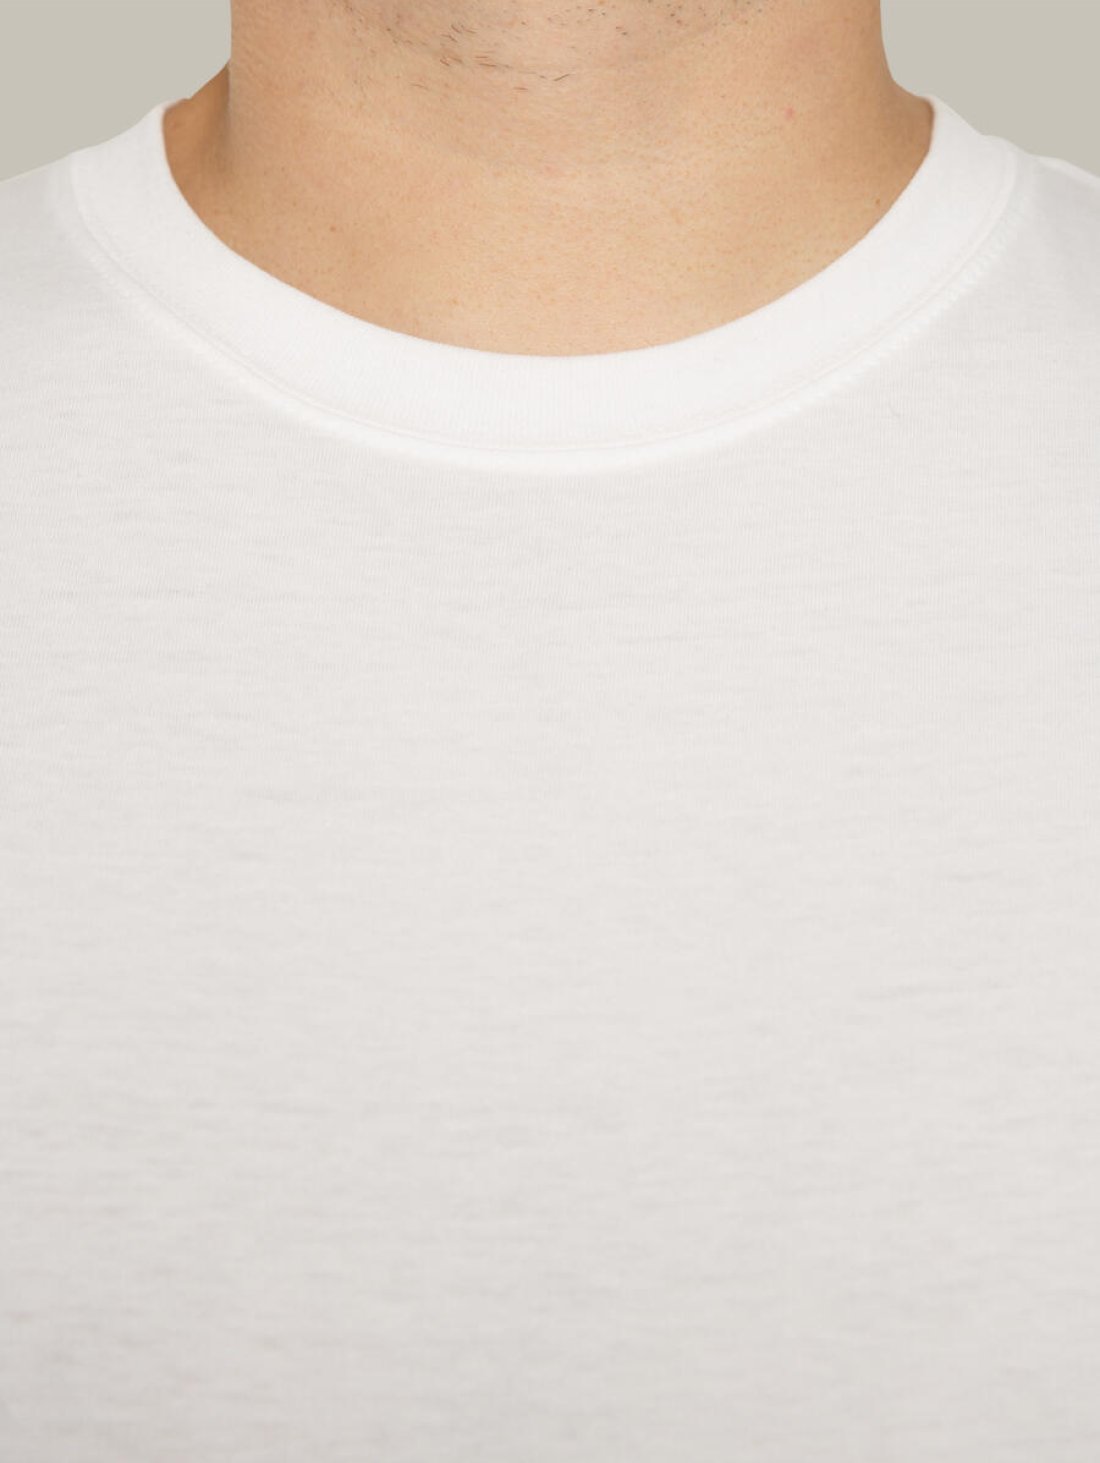 Чоловіча футболка, біла з принтом аватара Hopper 019